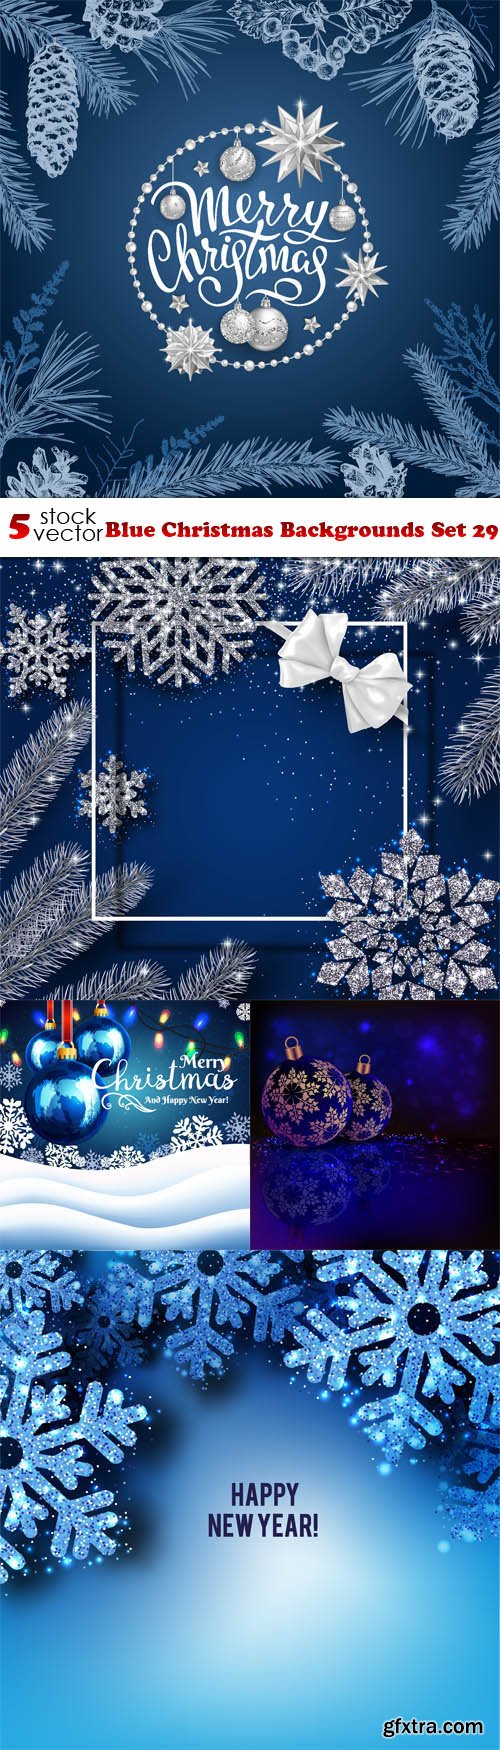 Vectors - Blue Christmas Backgrounds Set 29